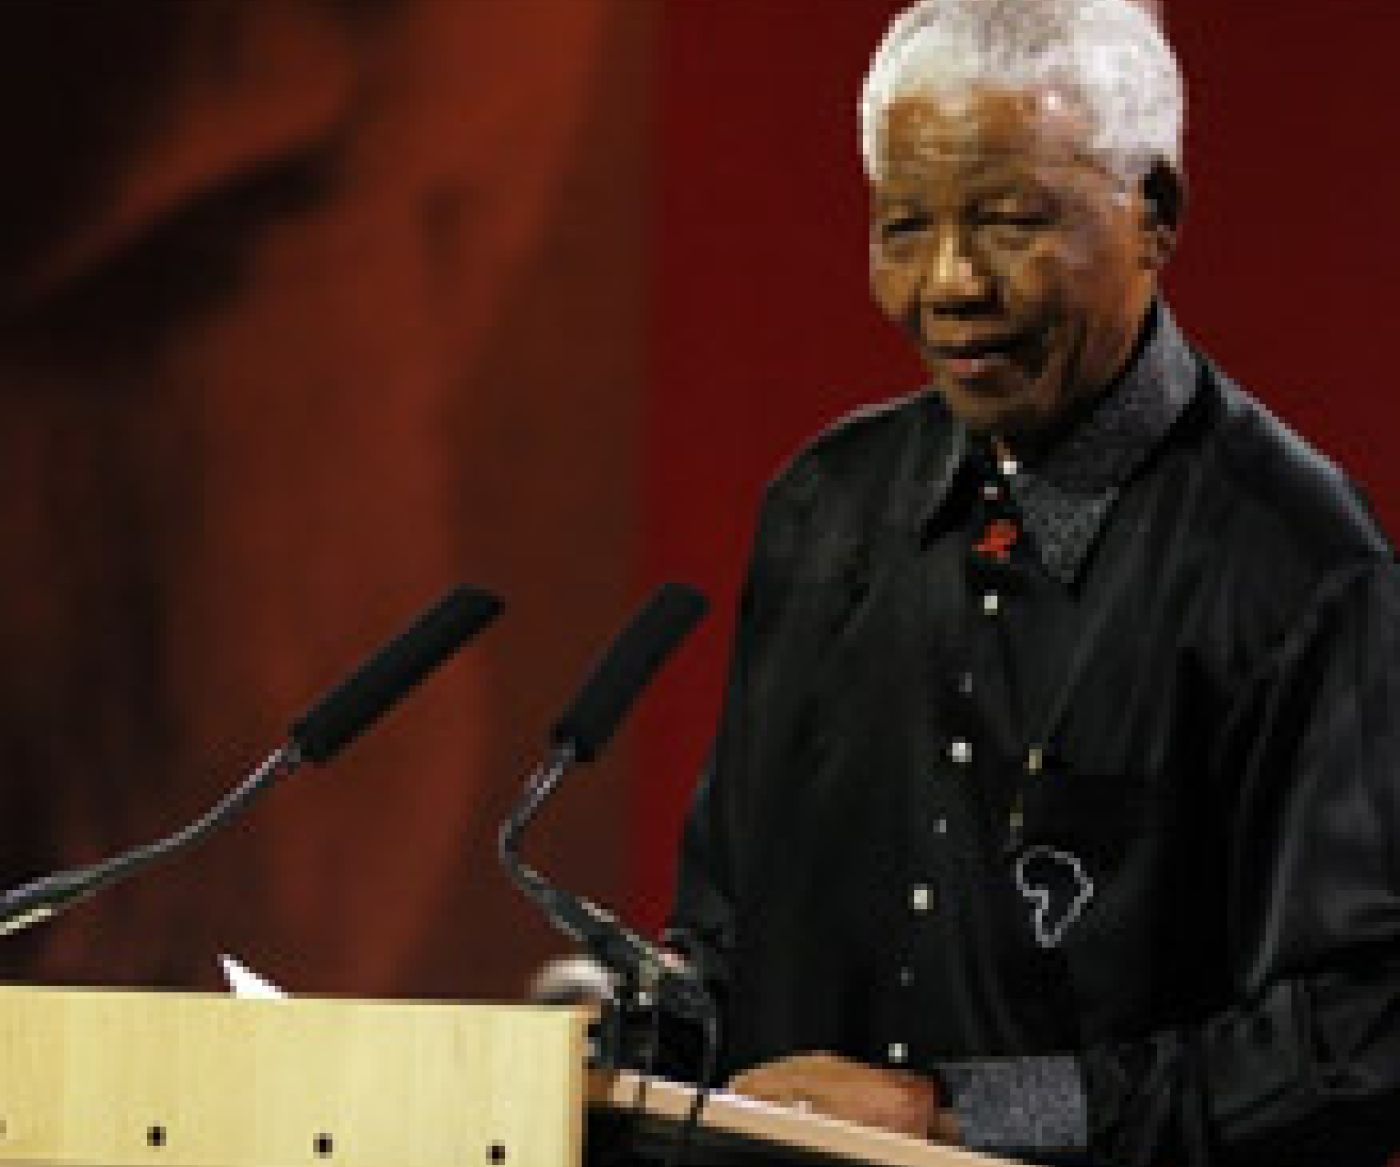 Nelson Mandela delivering a speech